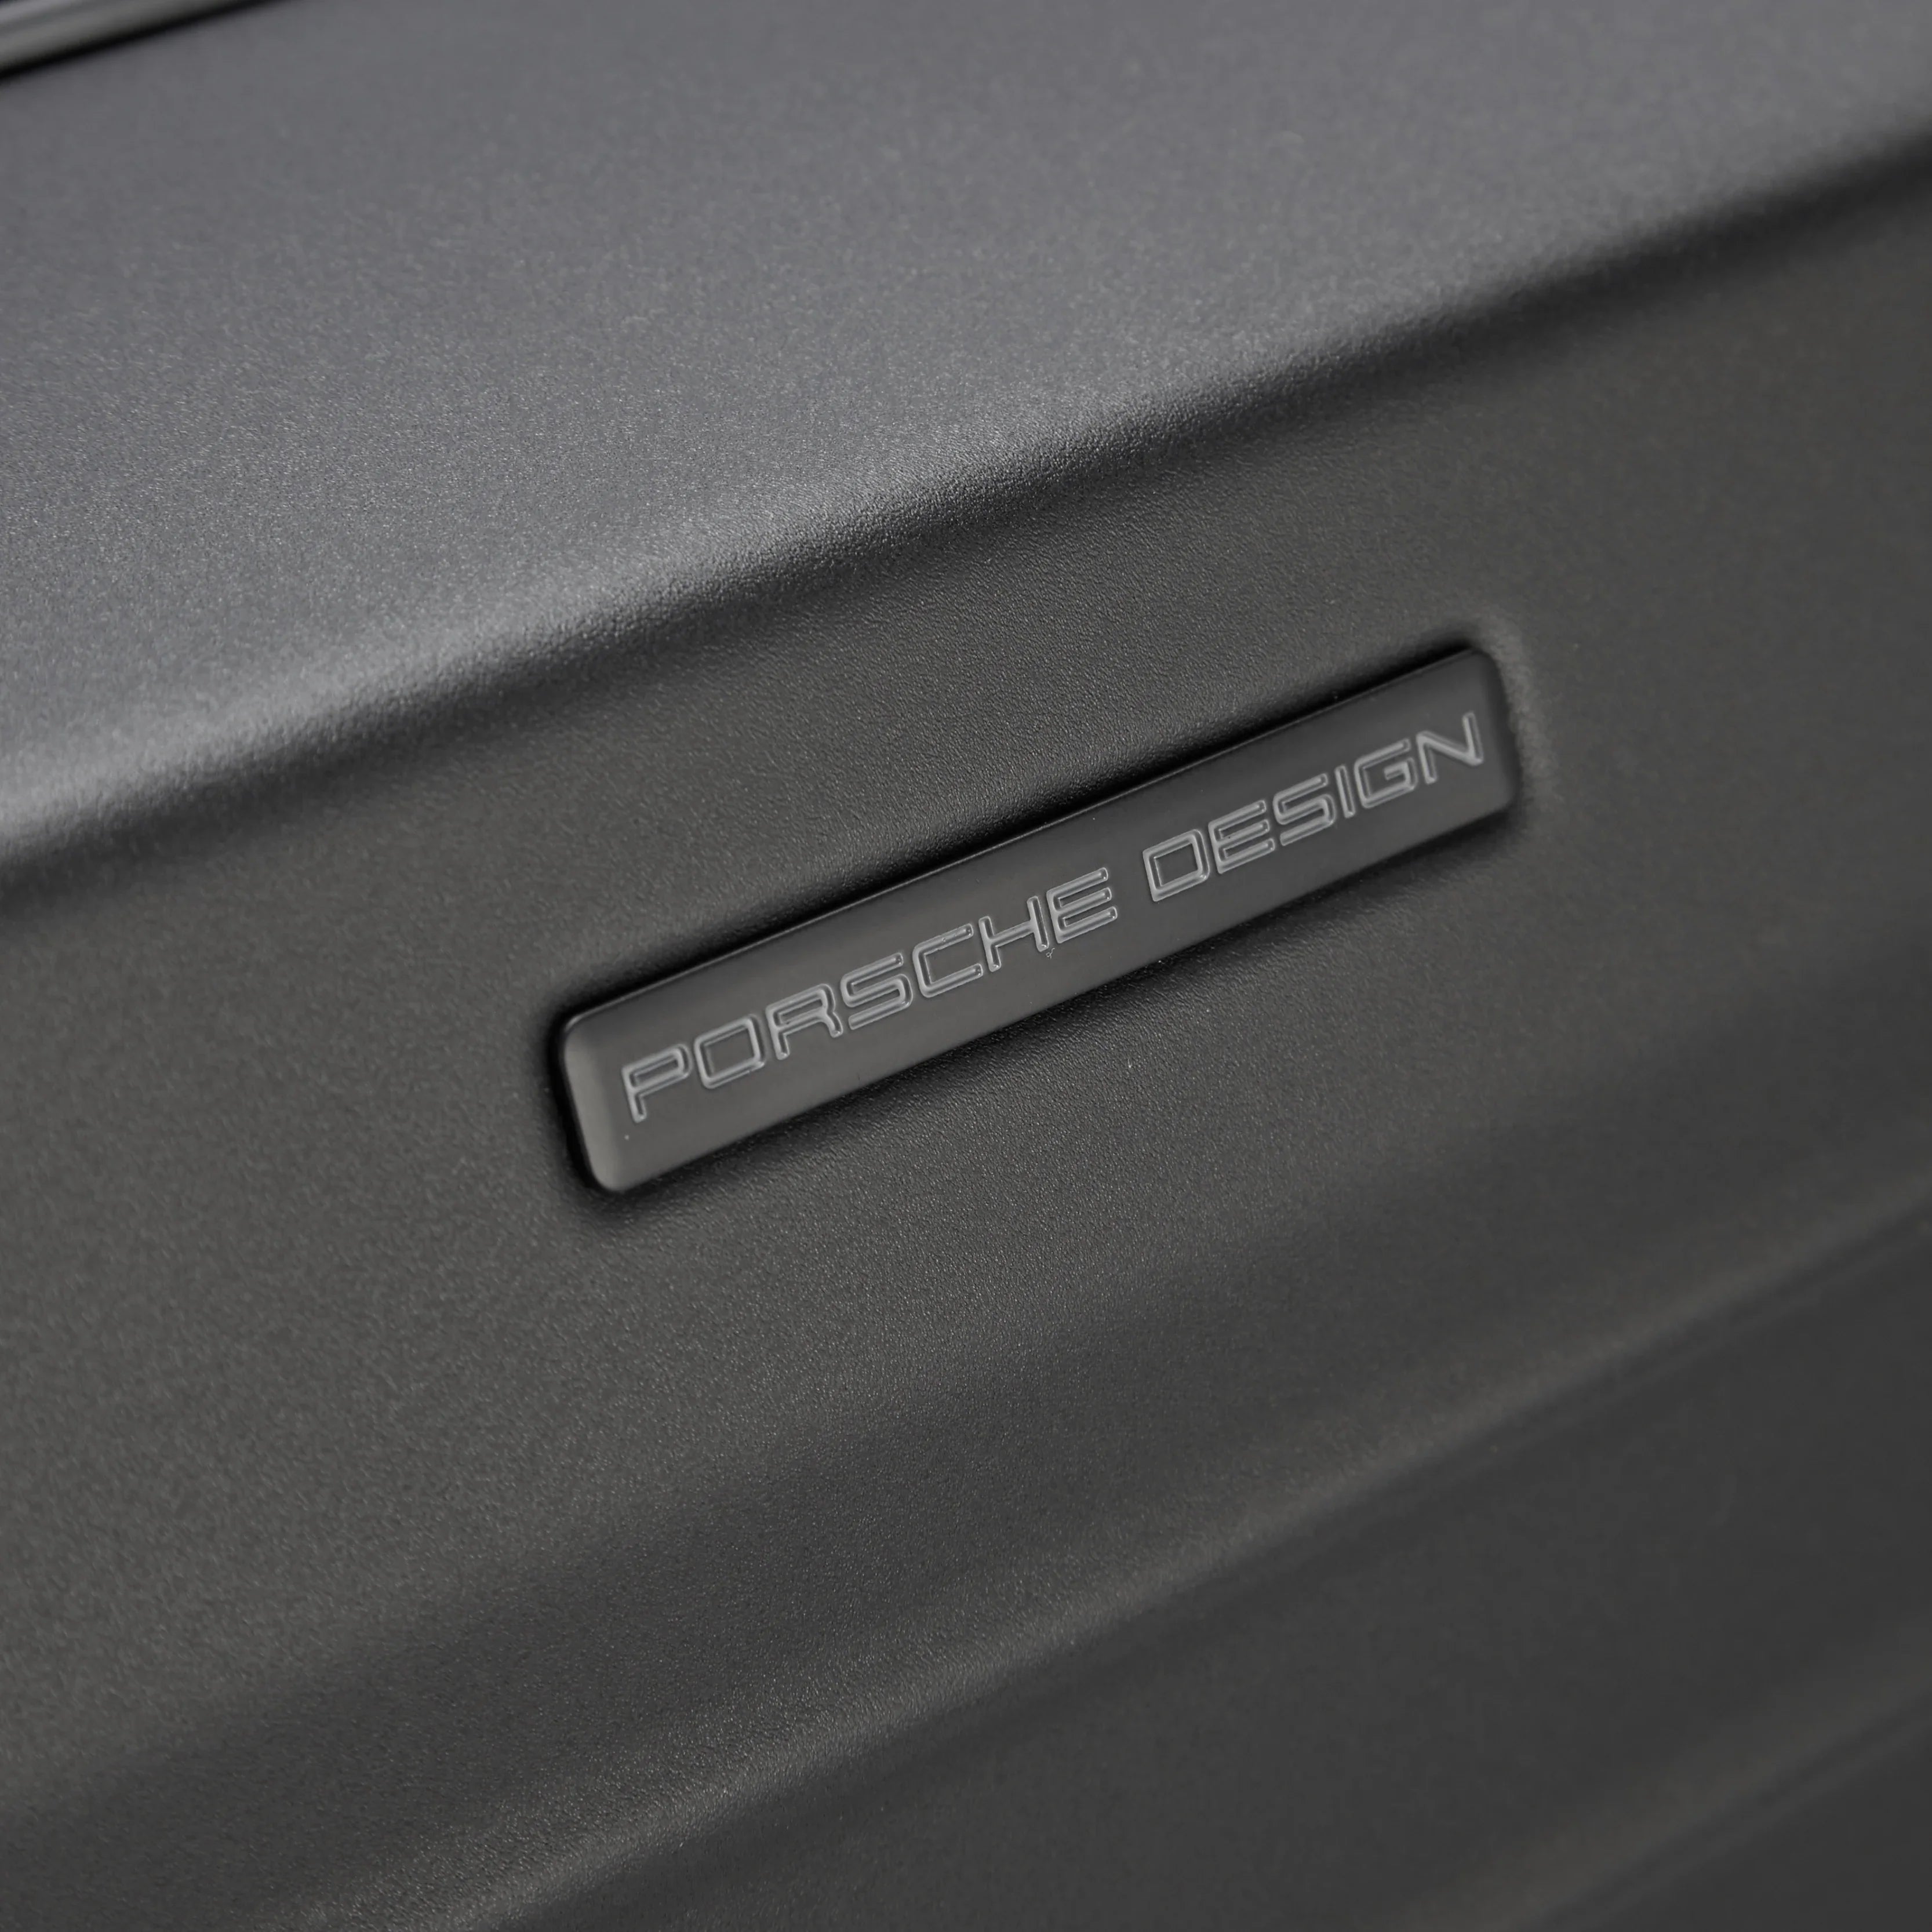 Porsche Design Roadster Hardcase Valise 4 roues 78 cm - Noir Brillant